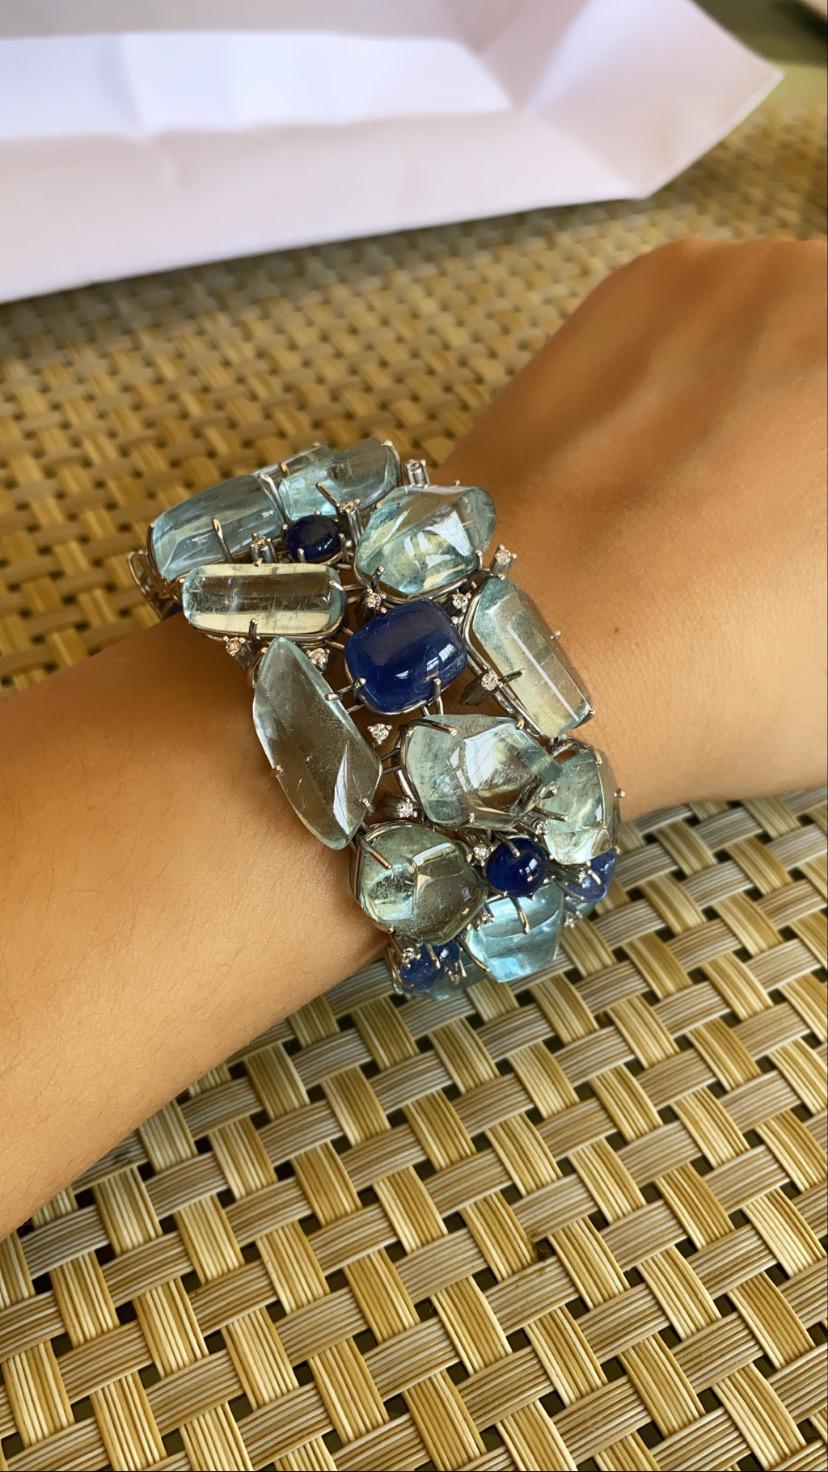 Ein wunderschönes und modernes Armband aus 18 Karat Weißgold mit natürlichen Aquamarinen und natürlichen blauen Saphiren mit Diamanten. Der Aquamarin hat ein Gewicht von 149,15 Karat, der blaue Saphir 35,79 Karat und der Diamant 0,77 Karat. Das